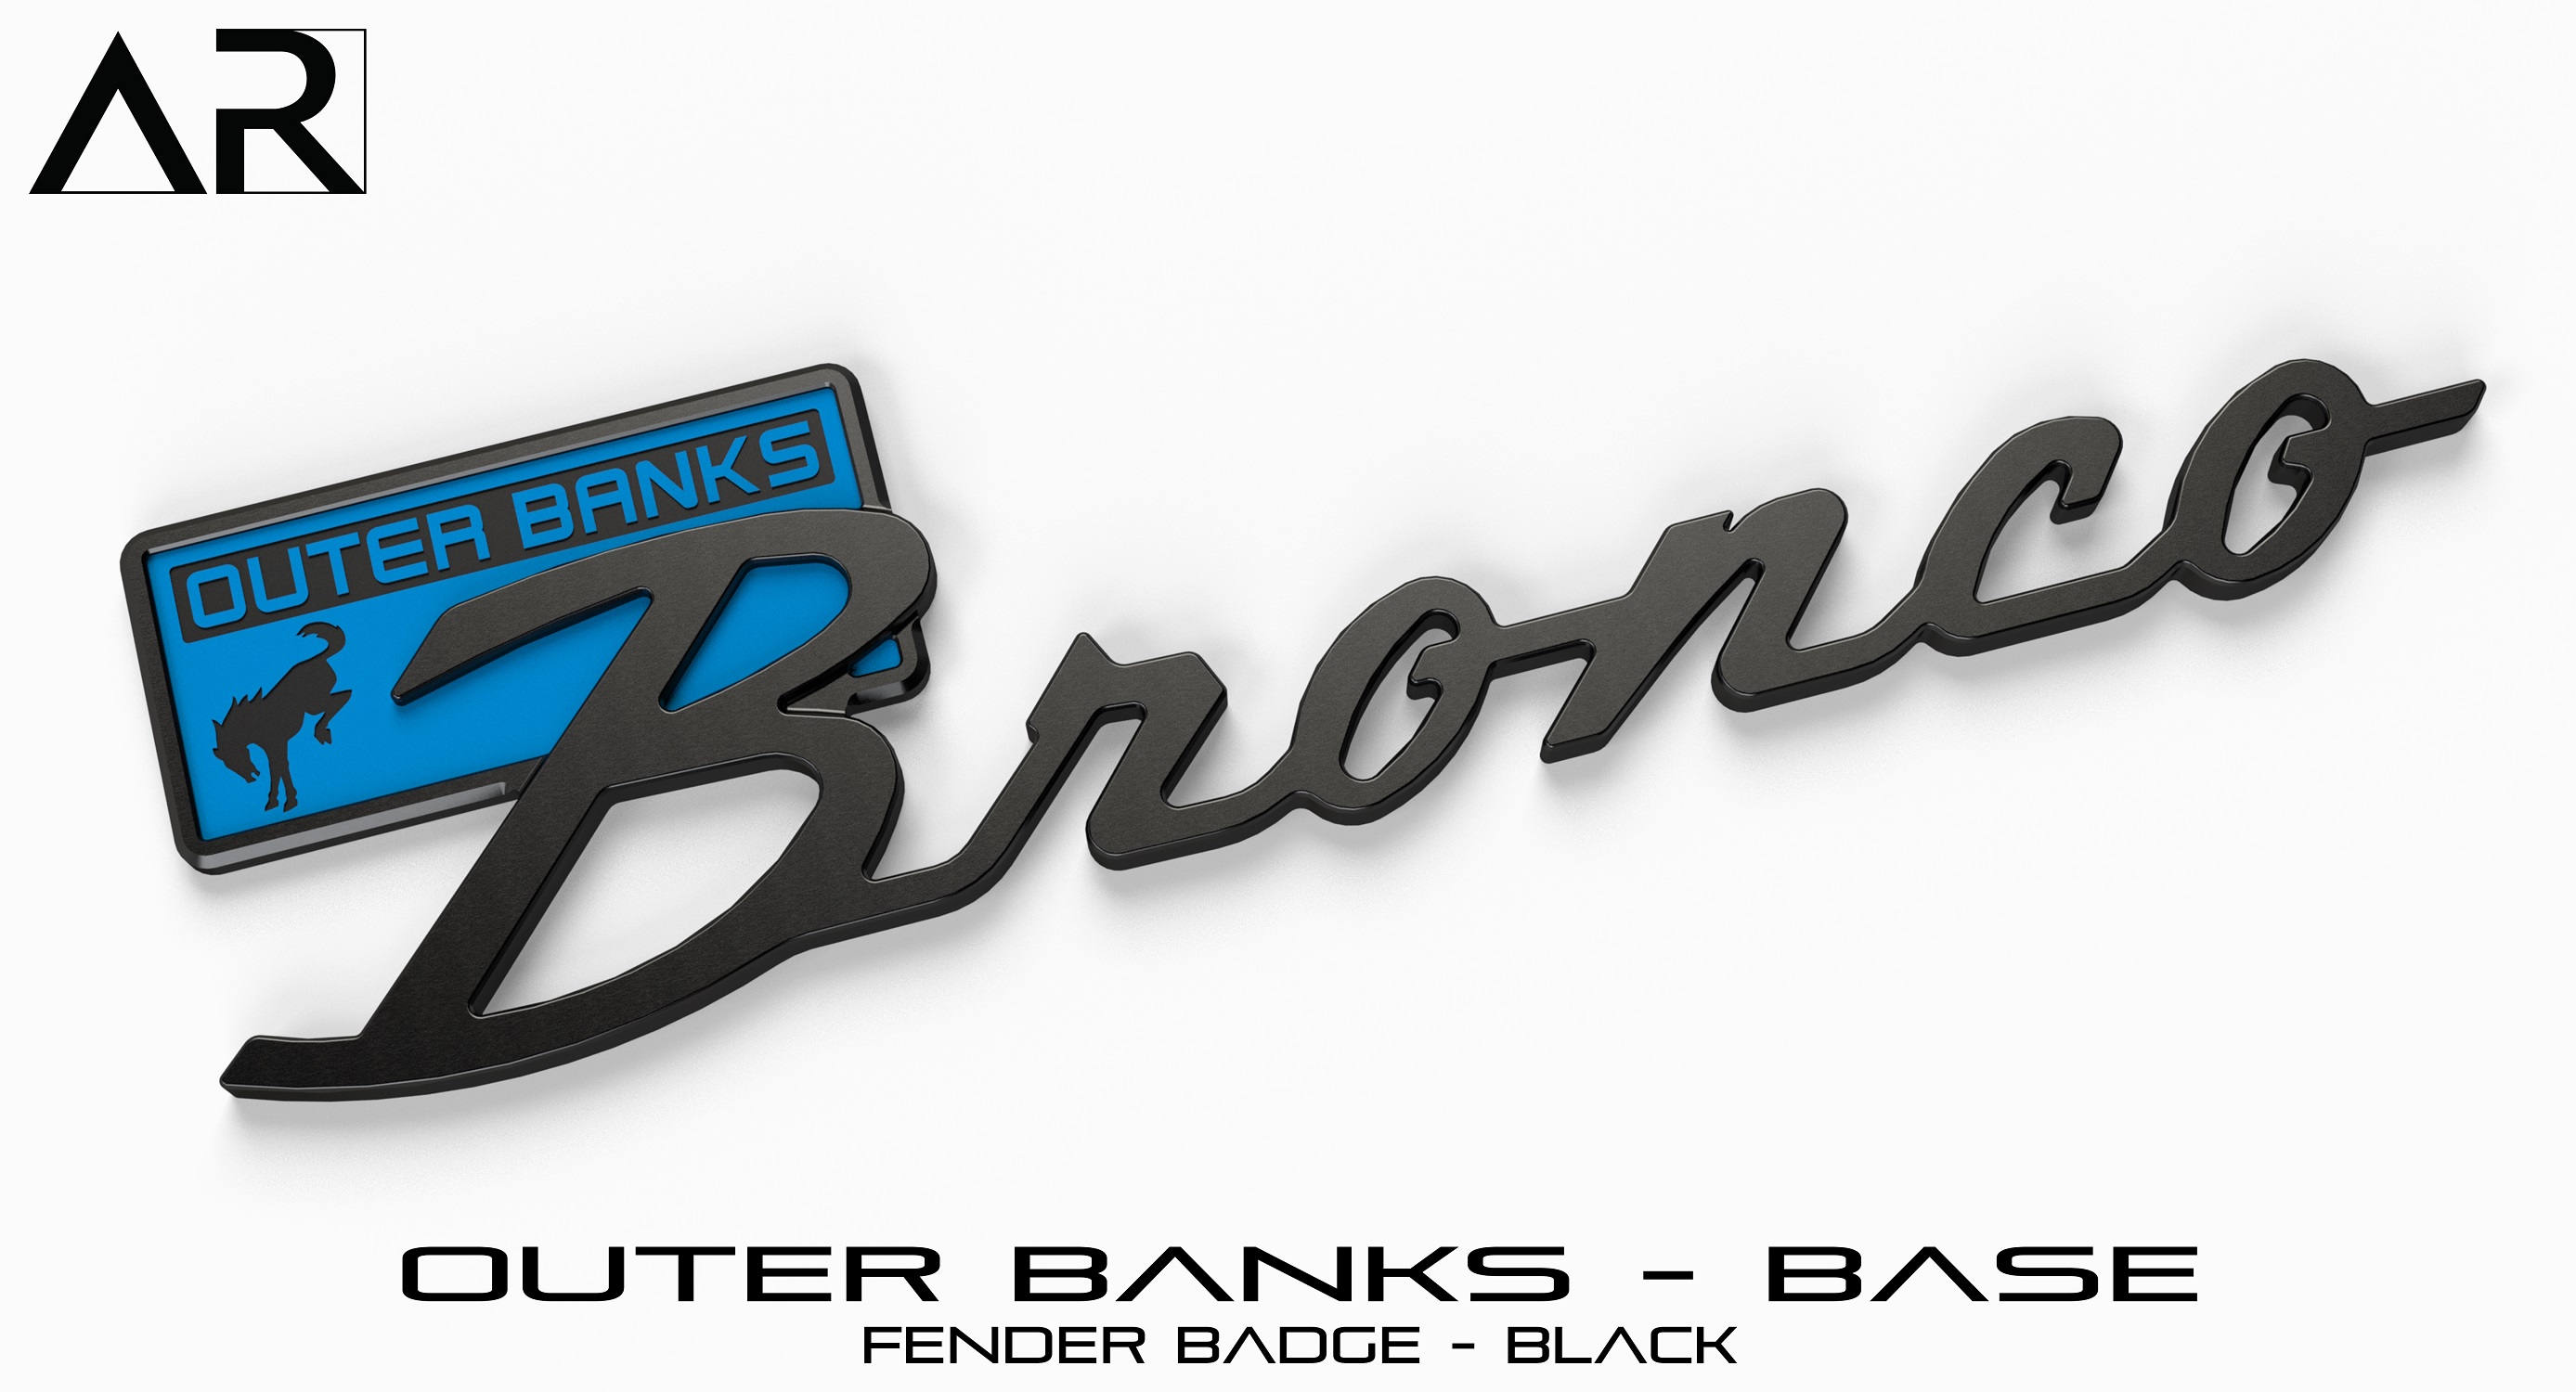 Ford Bronco AR | BRONCO CLASSIC DNA Fender Badge 1601006_B  - Fender Badge  - Outer Banks Base - Black